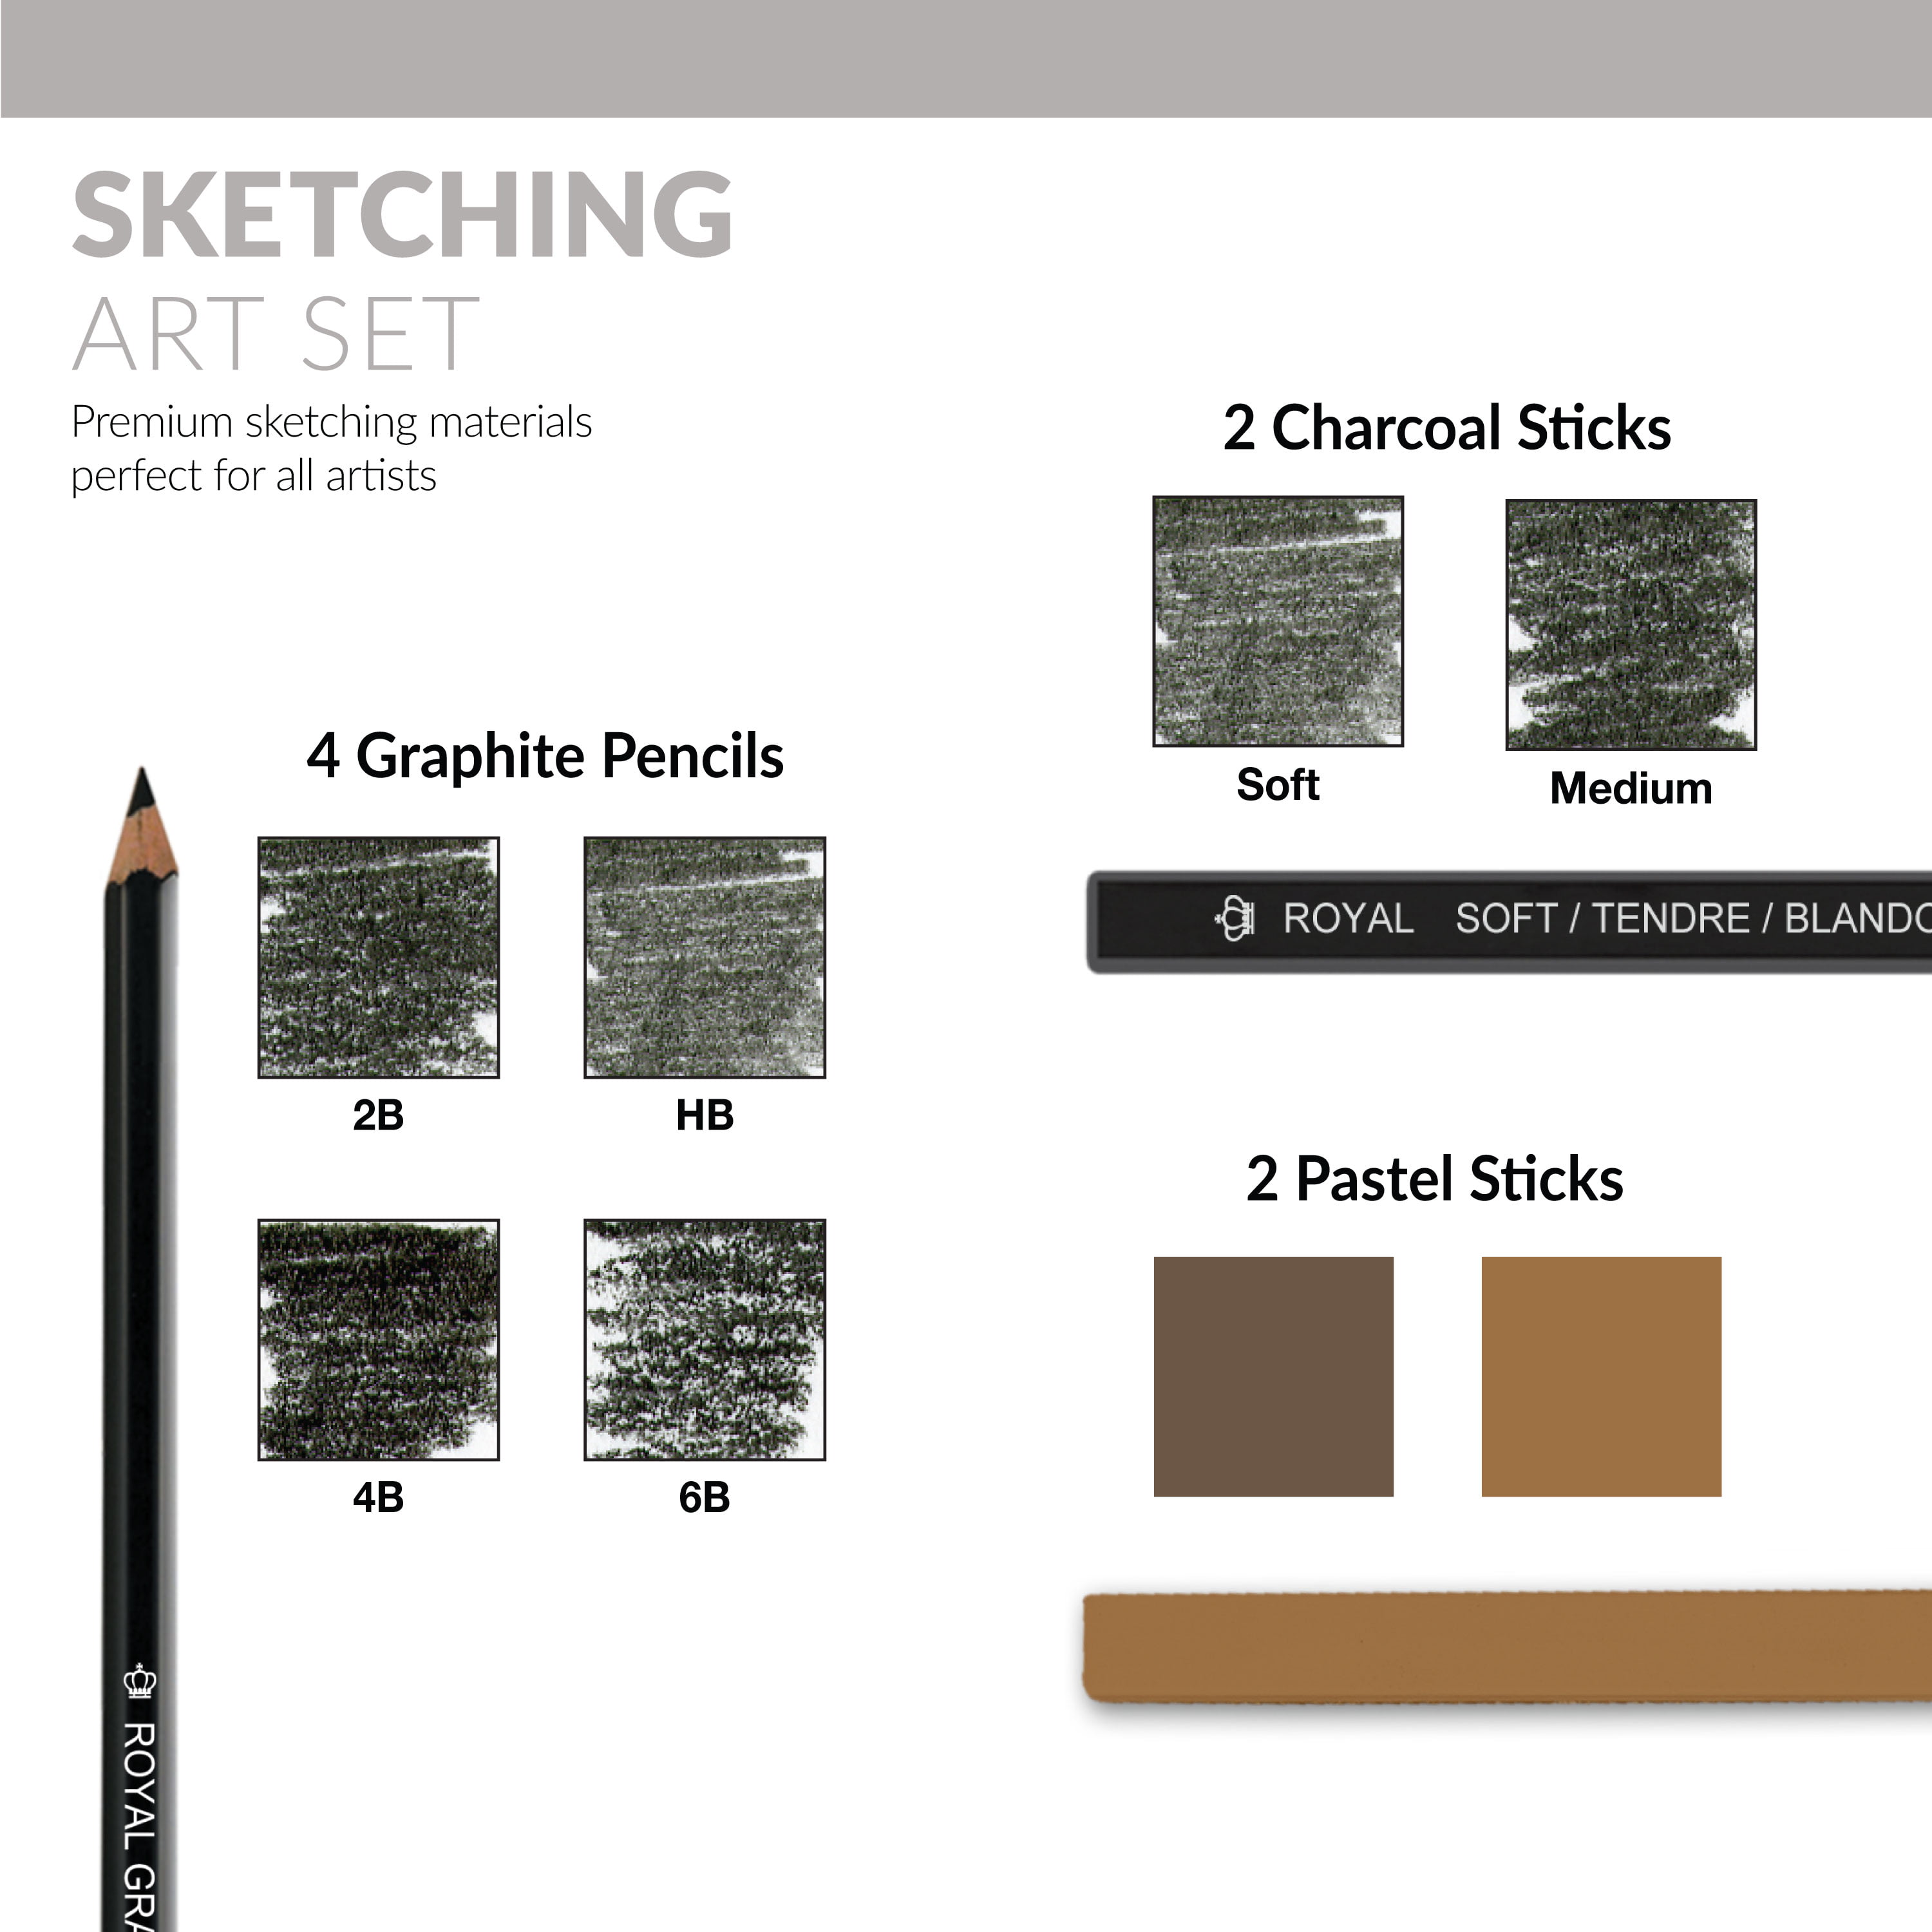  AONLSKH Sketching and Drawing Pencils Set-35pcs,Art